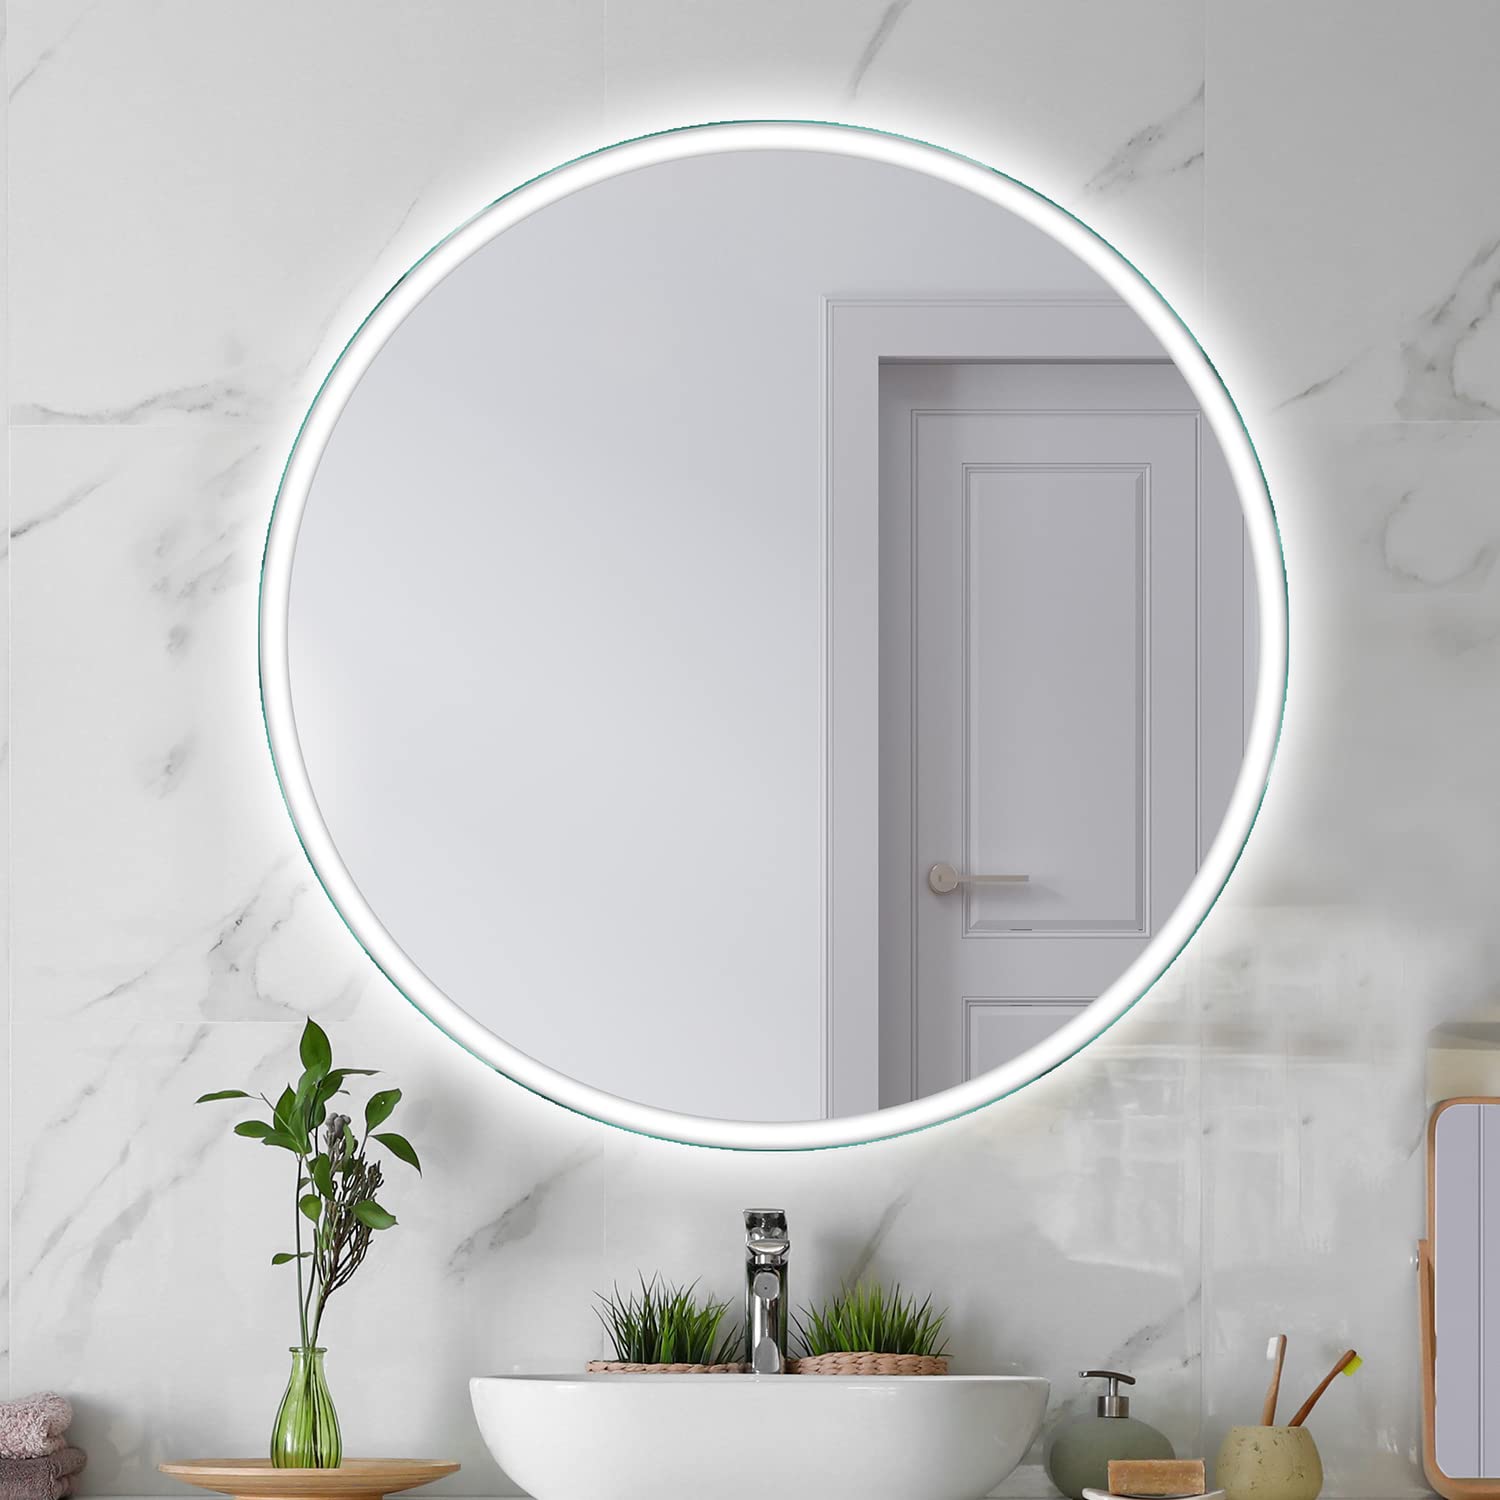 SARAR Runder Wandspiegel mit rundum LED-Beleuchtung 100cm Made in Germany Designo MAR110 Badspiegel Spiegel mit Beleuchtung Badezimmerspiegel